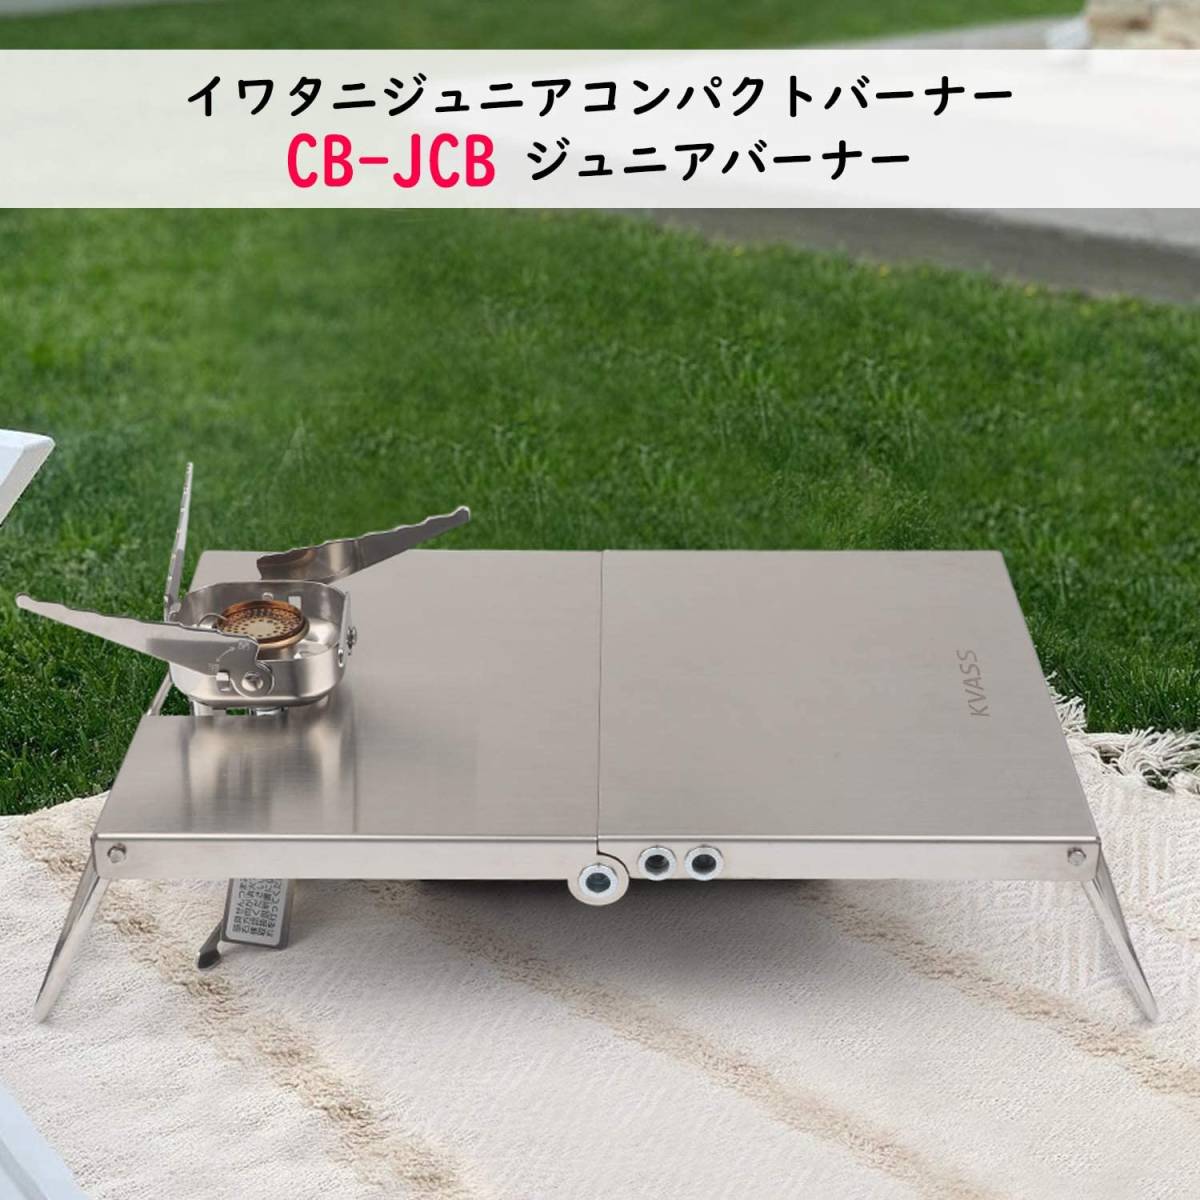 イワタニ ジュニアコンパクトバーナー CB-JCB 専用 遮熱板 テーブル ステンレス 折り畳み式 遮熱テーブル 収納袋付き キャンプ 料理の画像6